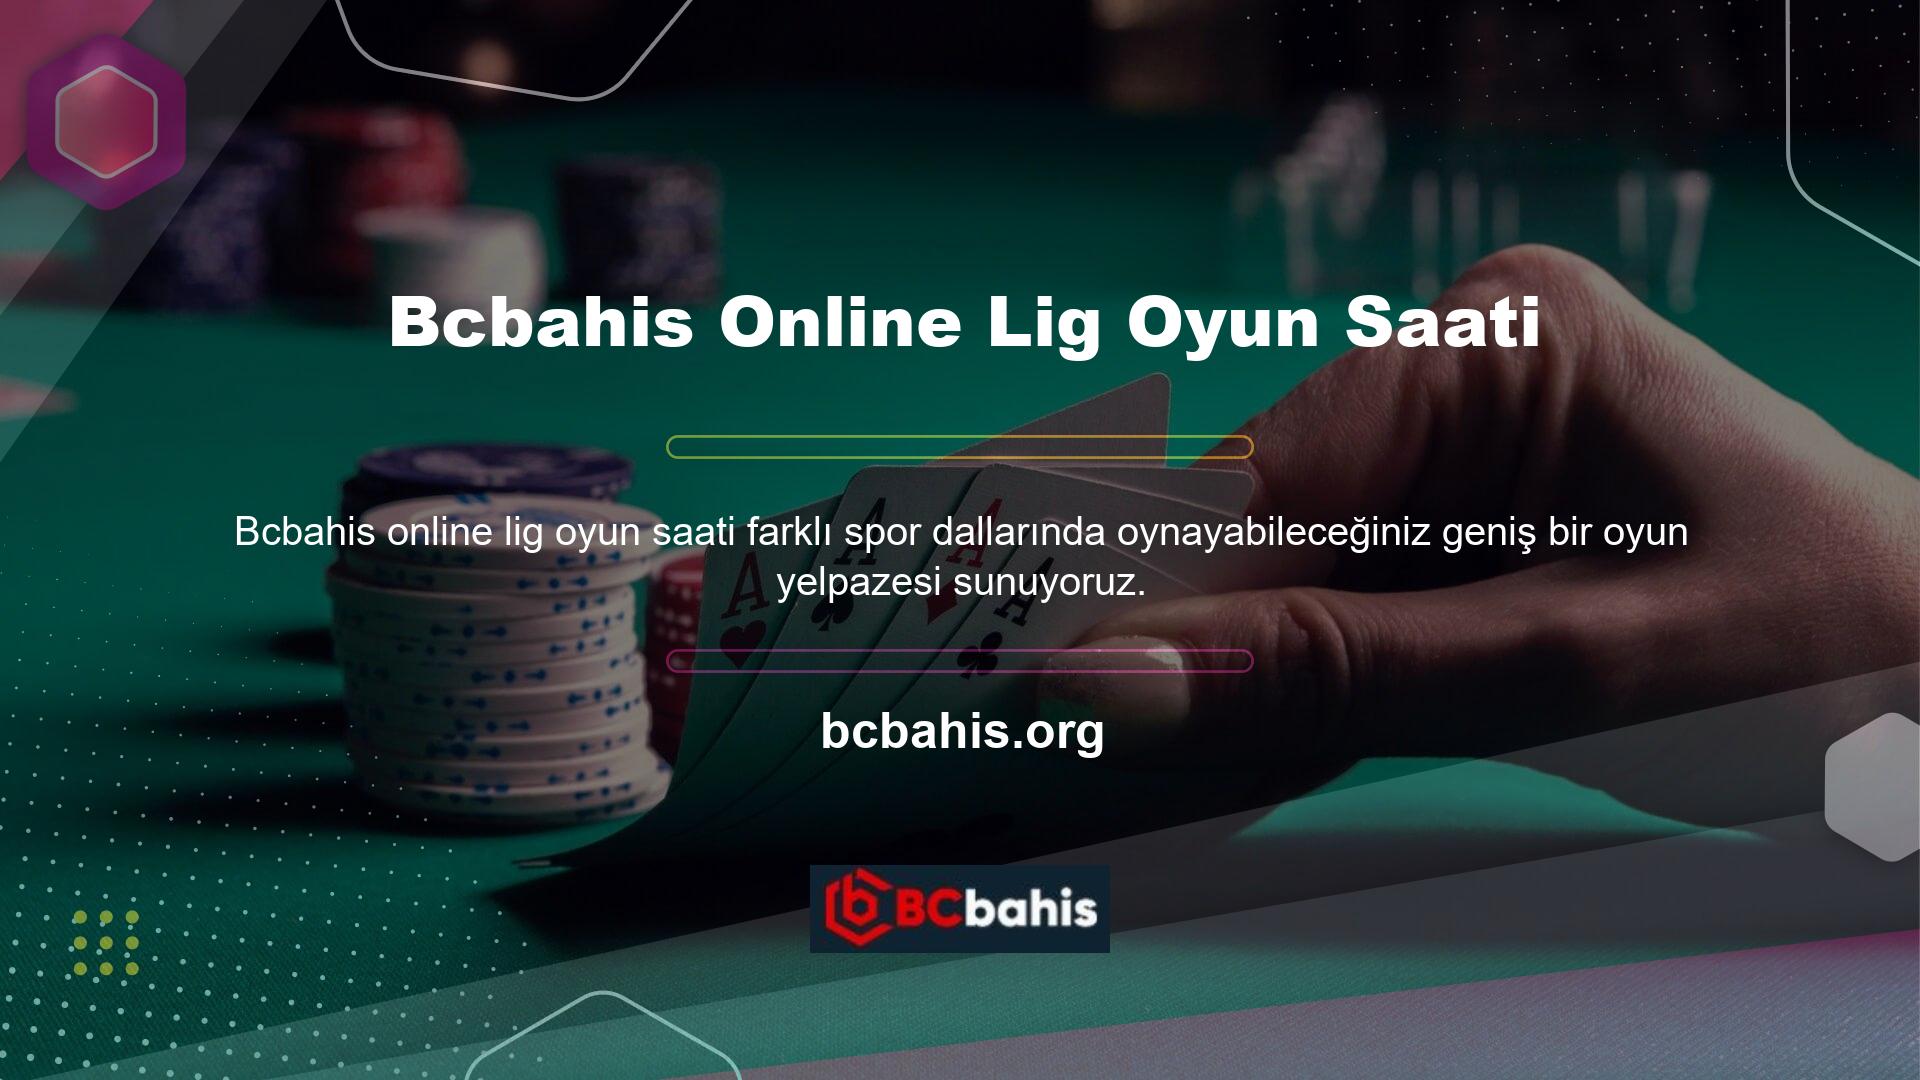 Bu oyunlara Bcbahis online oyun sitesinden de ulaşabilirsiniz